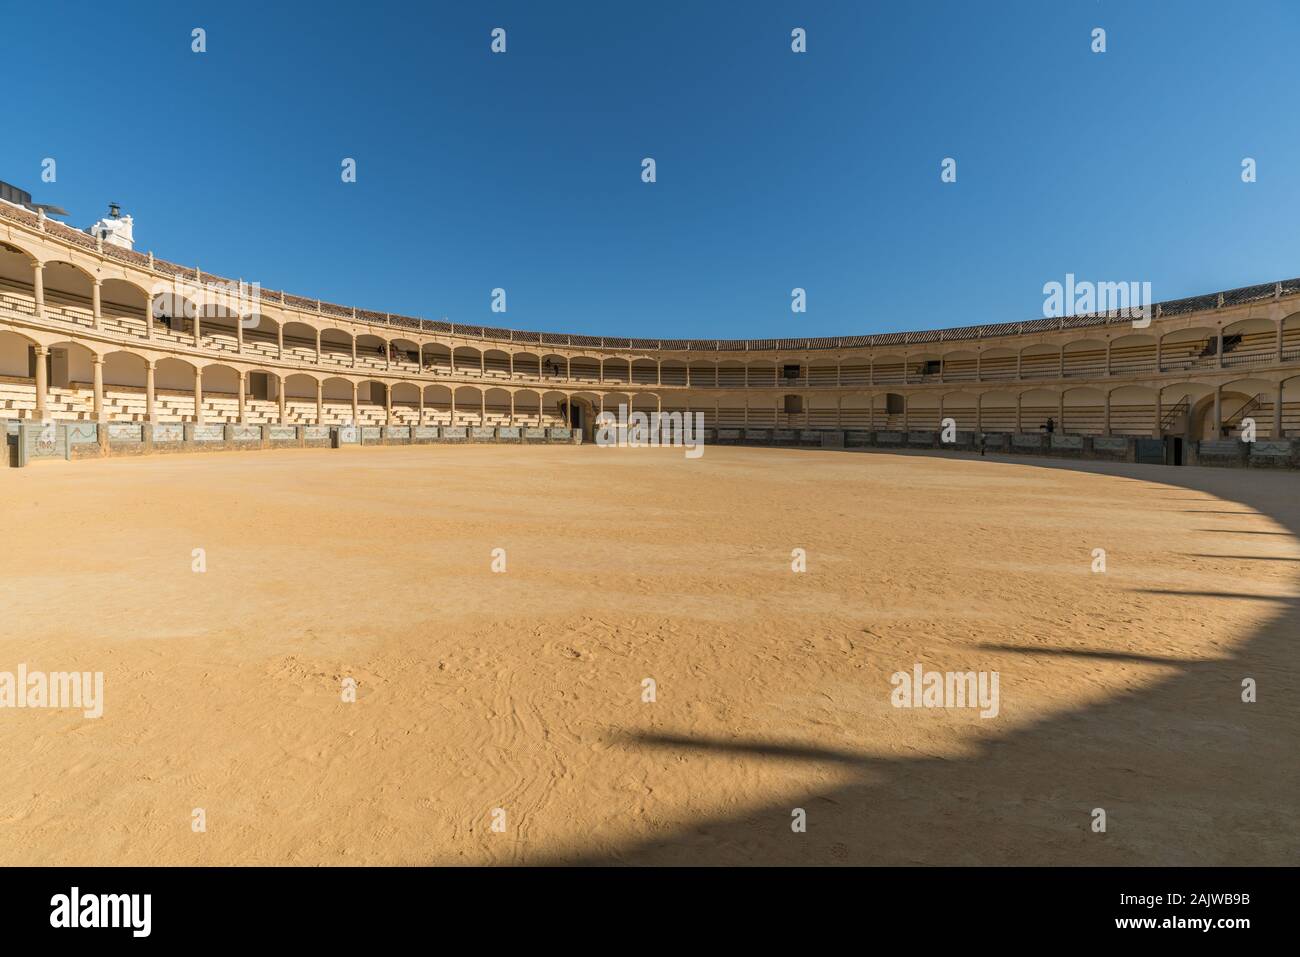 The architecture in the Plaza de Toros de Ronda, Ancient famous bullring in Ronda Stock Photo